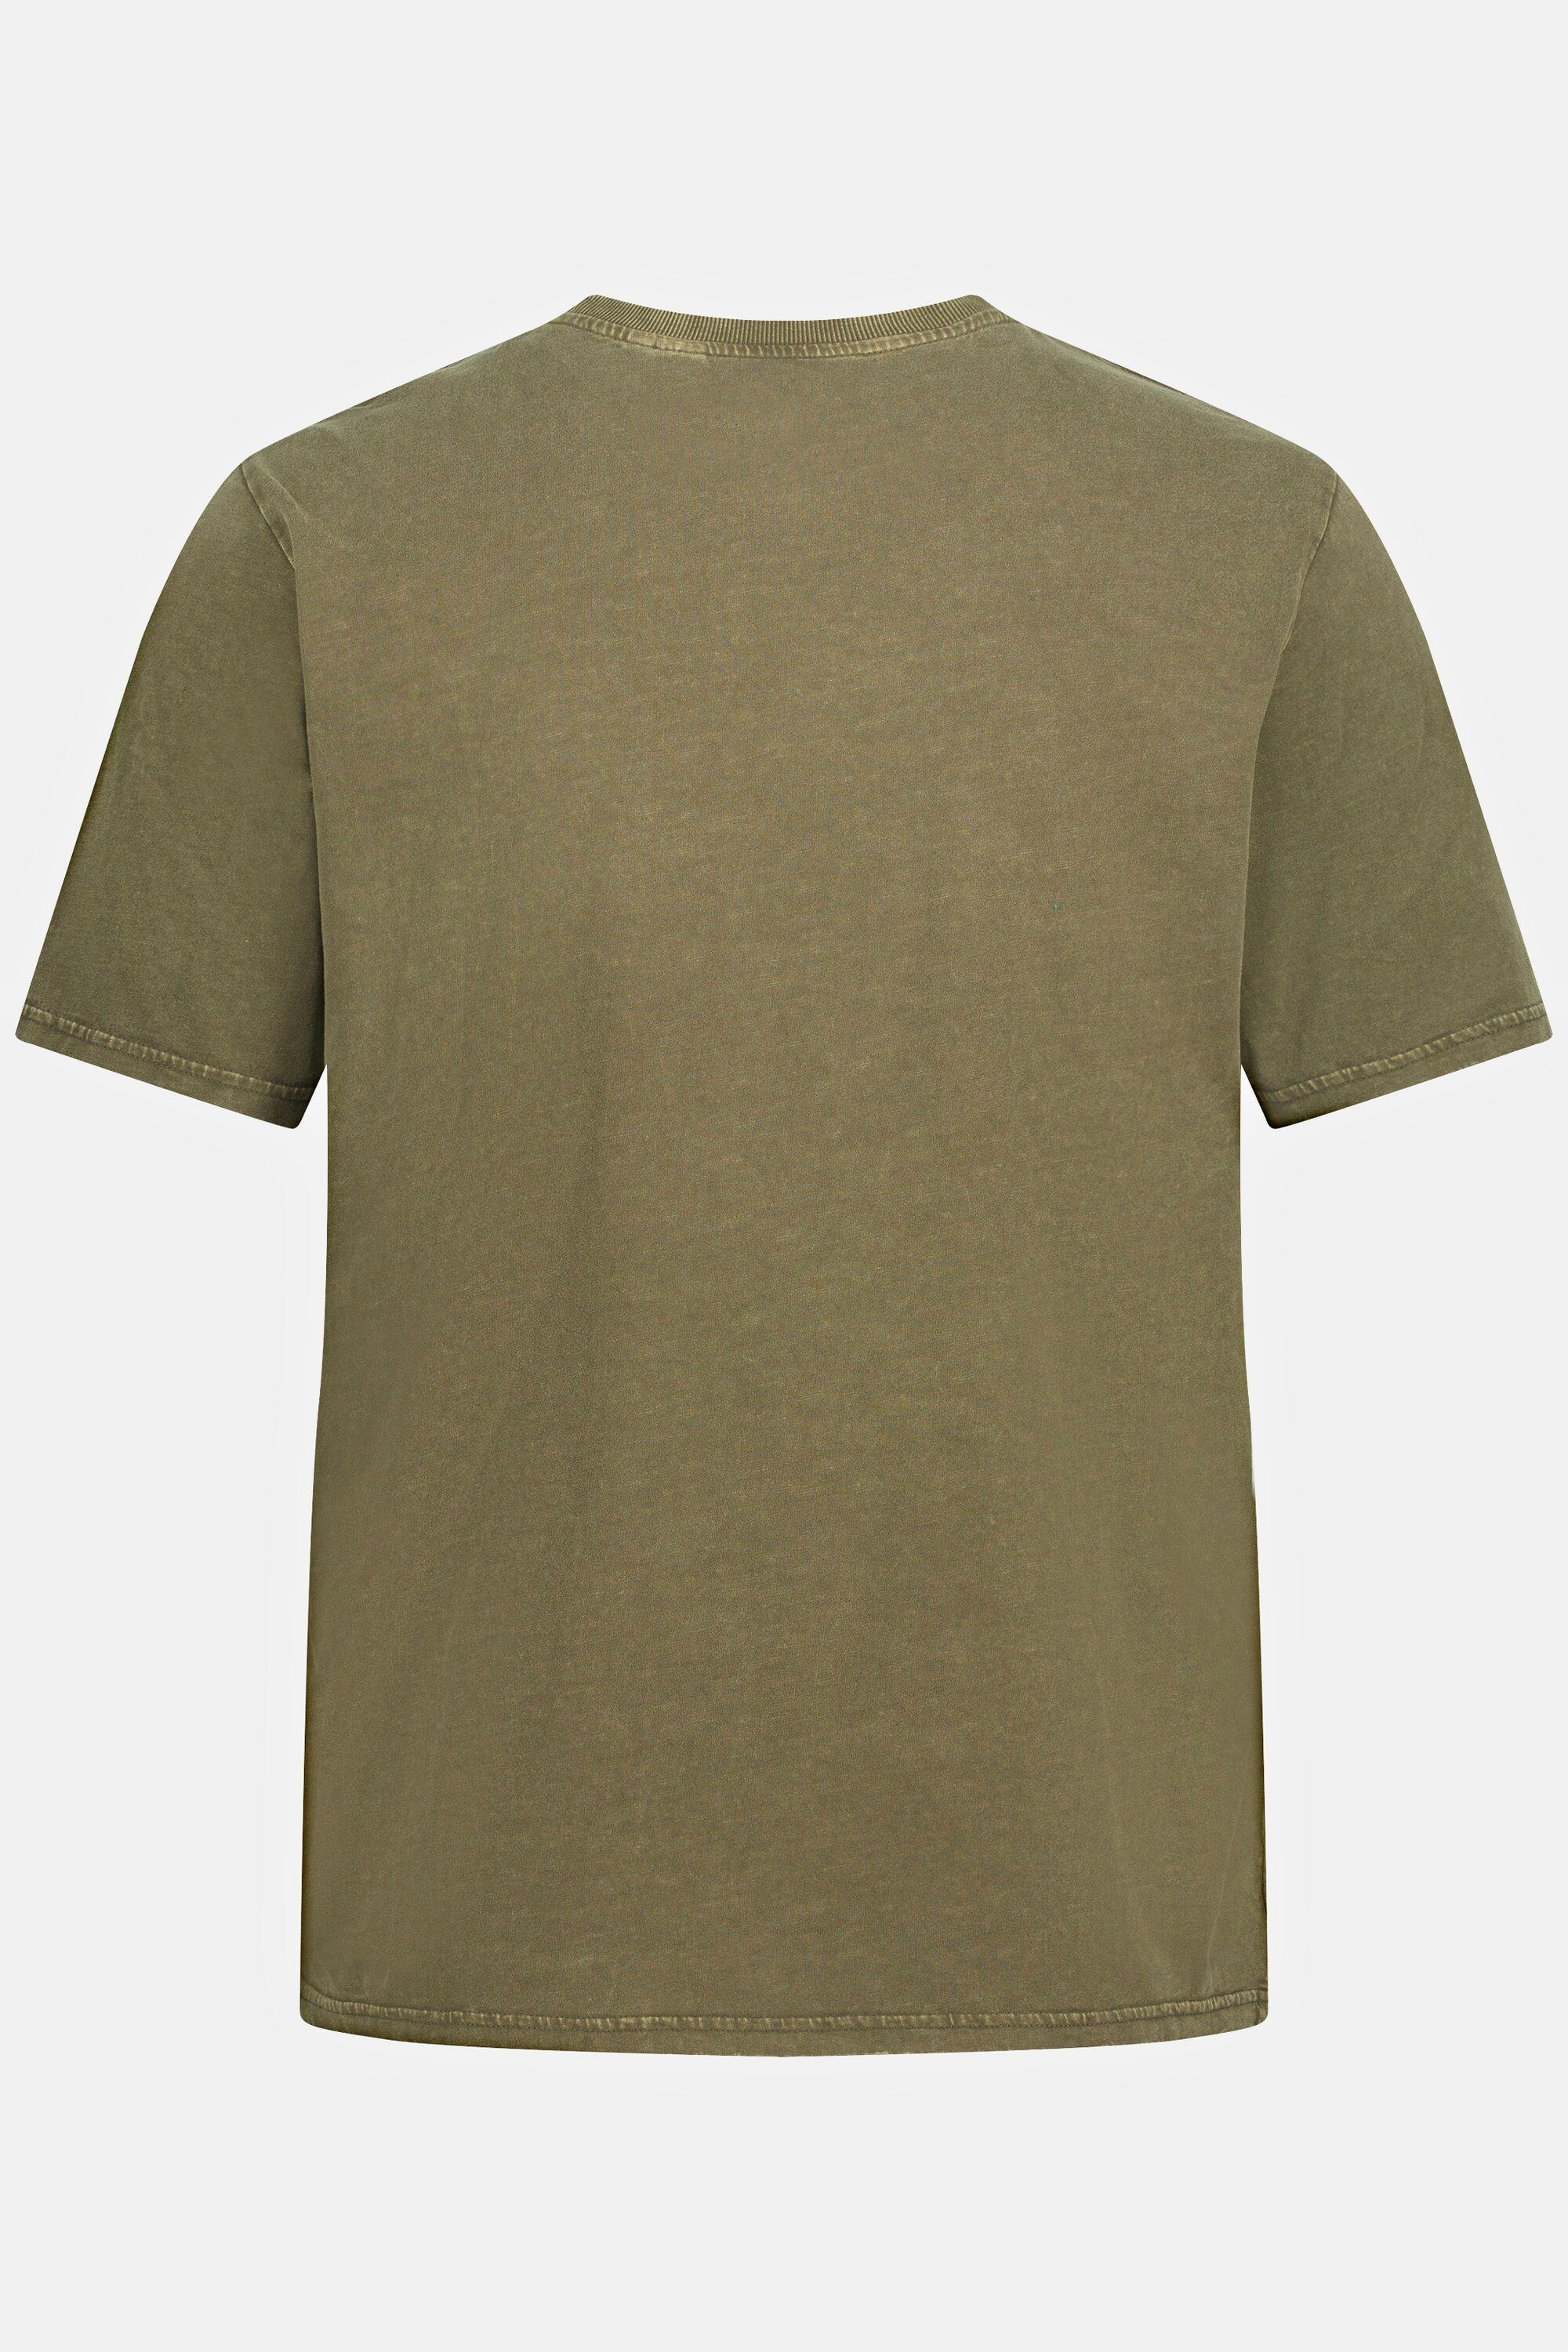 JP1880 T-Shirt T-Shirt Halbarm Brusttasche Rundhals grün